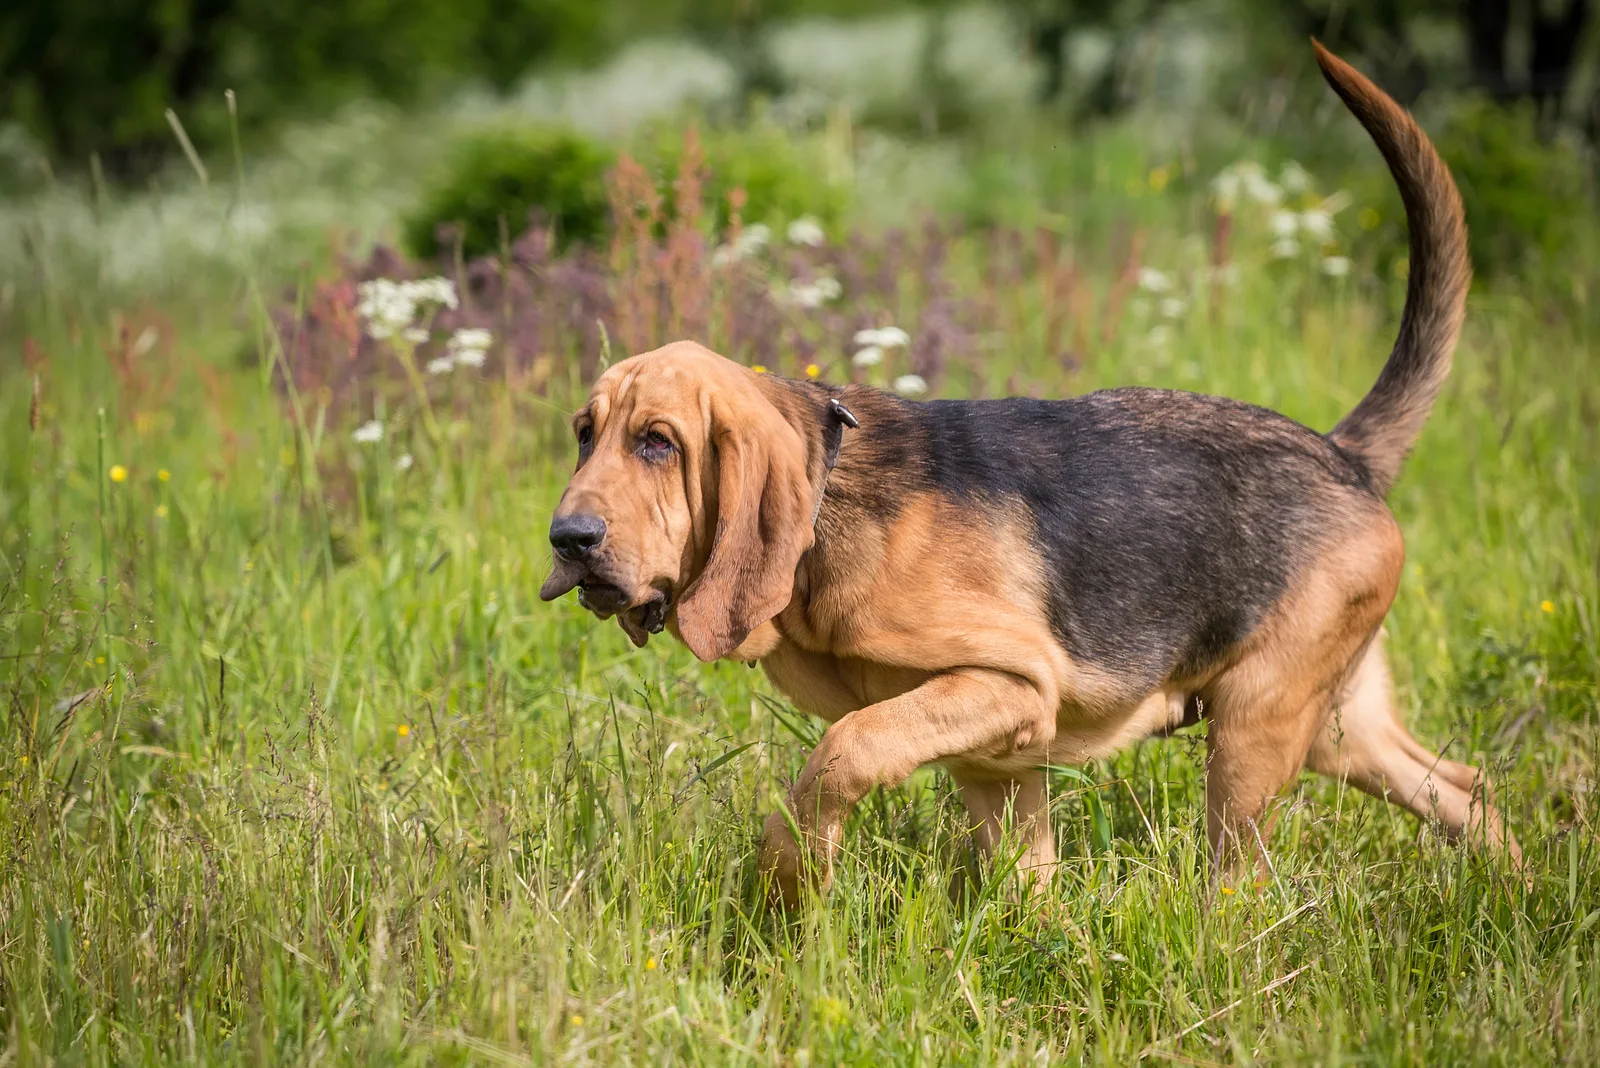 Bloodhound enjoys walking